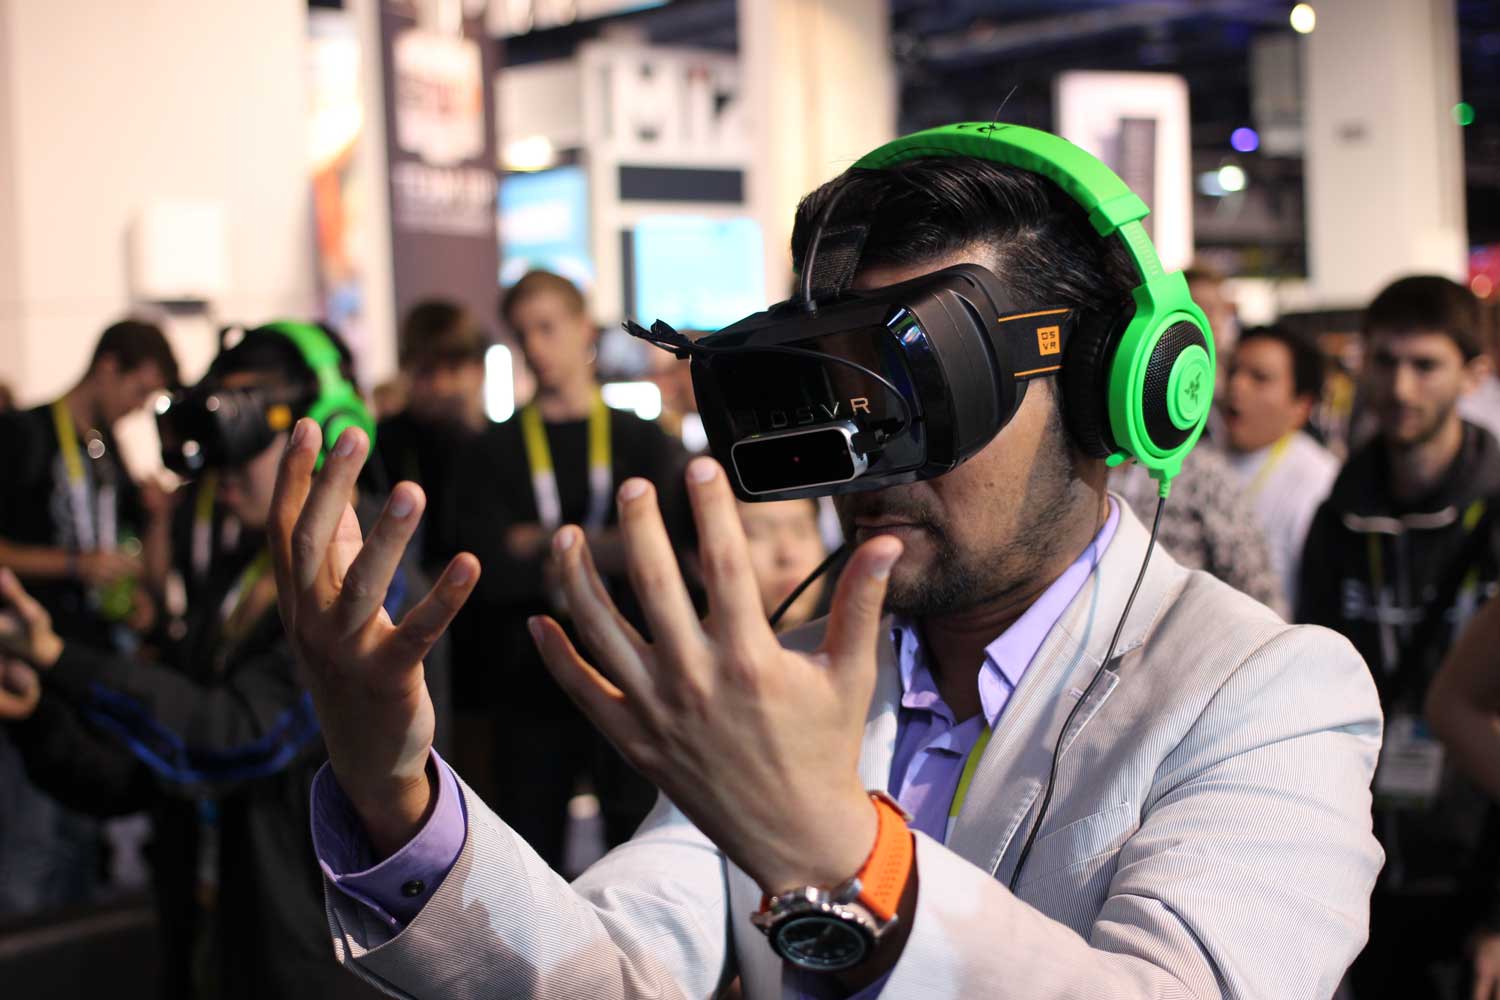 trade show virtual reality